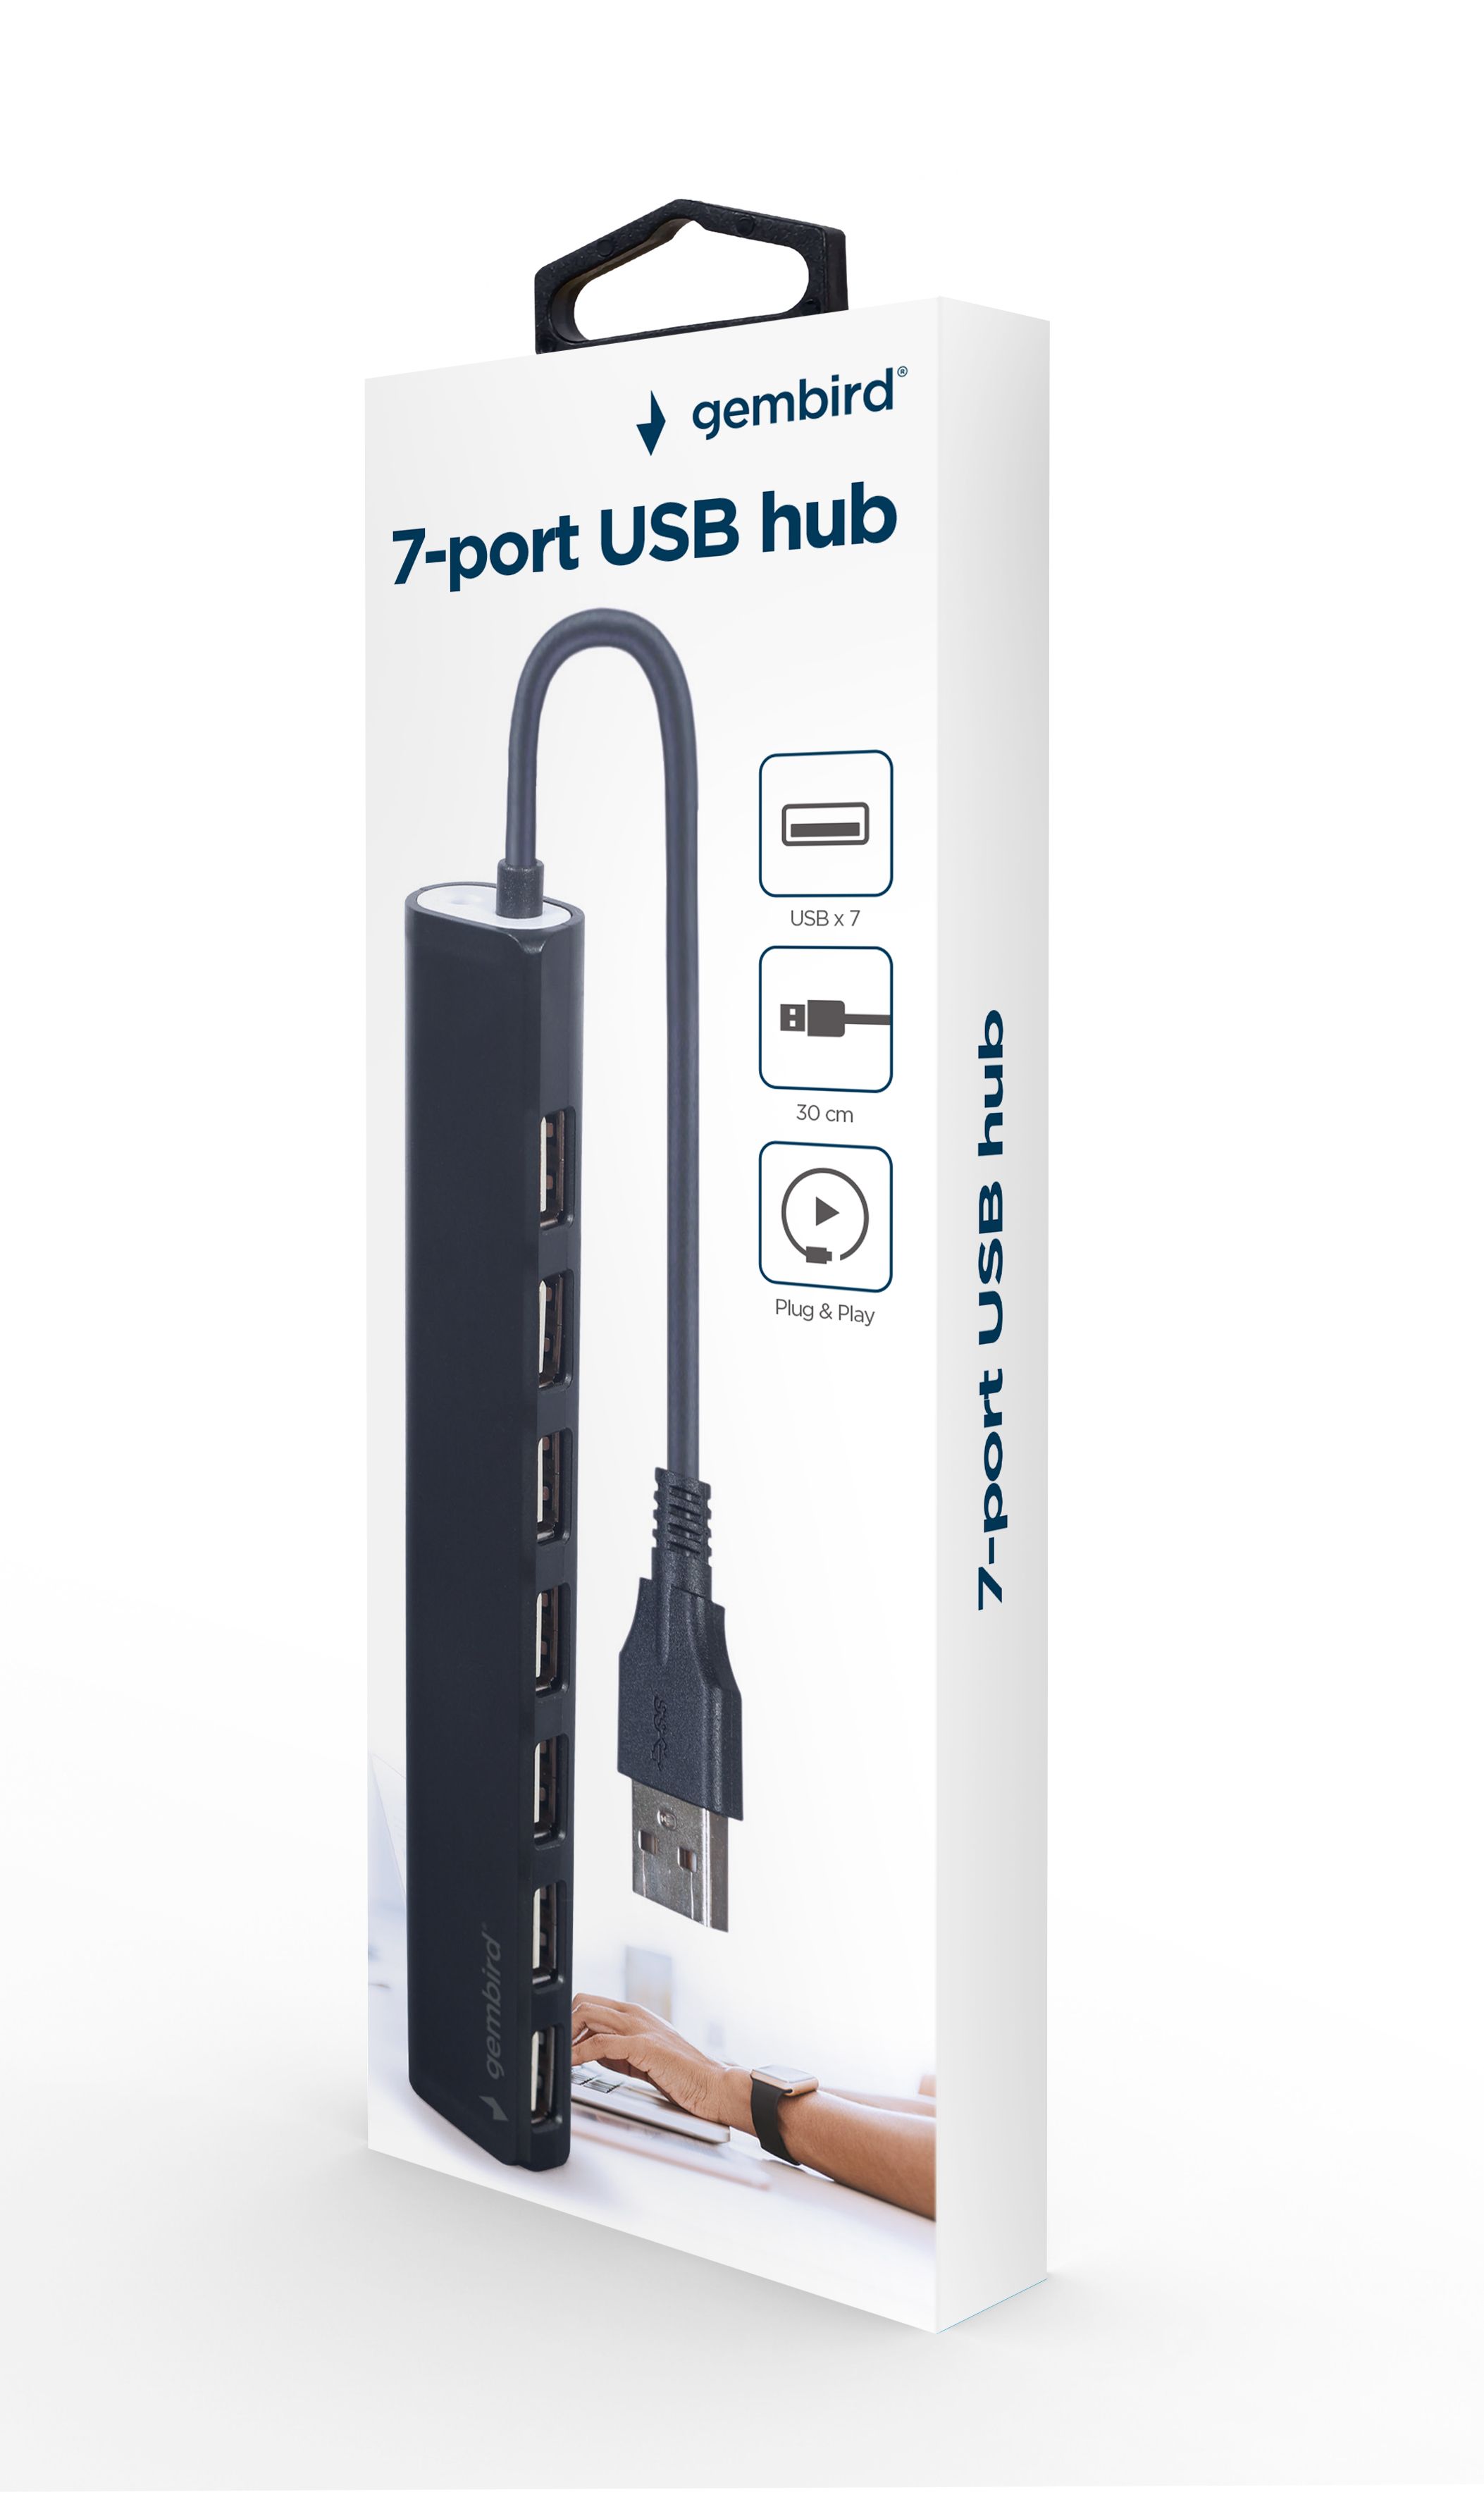 HUB extern GEMBIRD, porturi USB: USB 2.0 x 7, conectare prin USB, cablu 0,30 m, negru, 